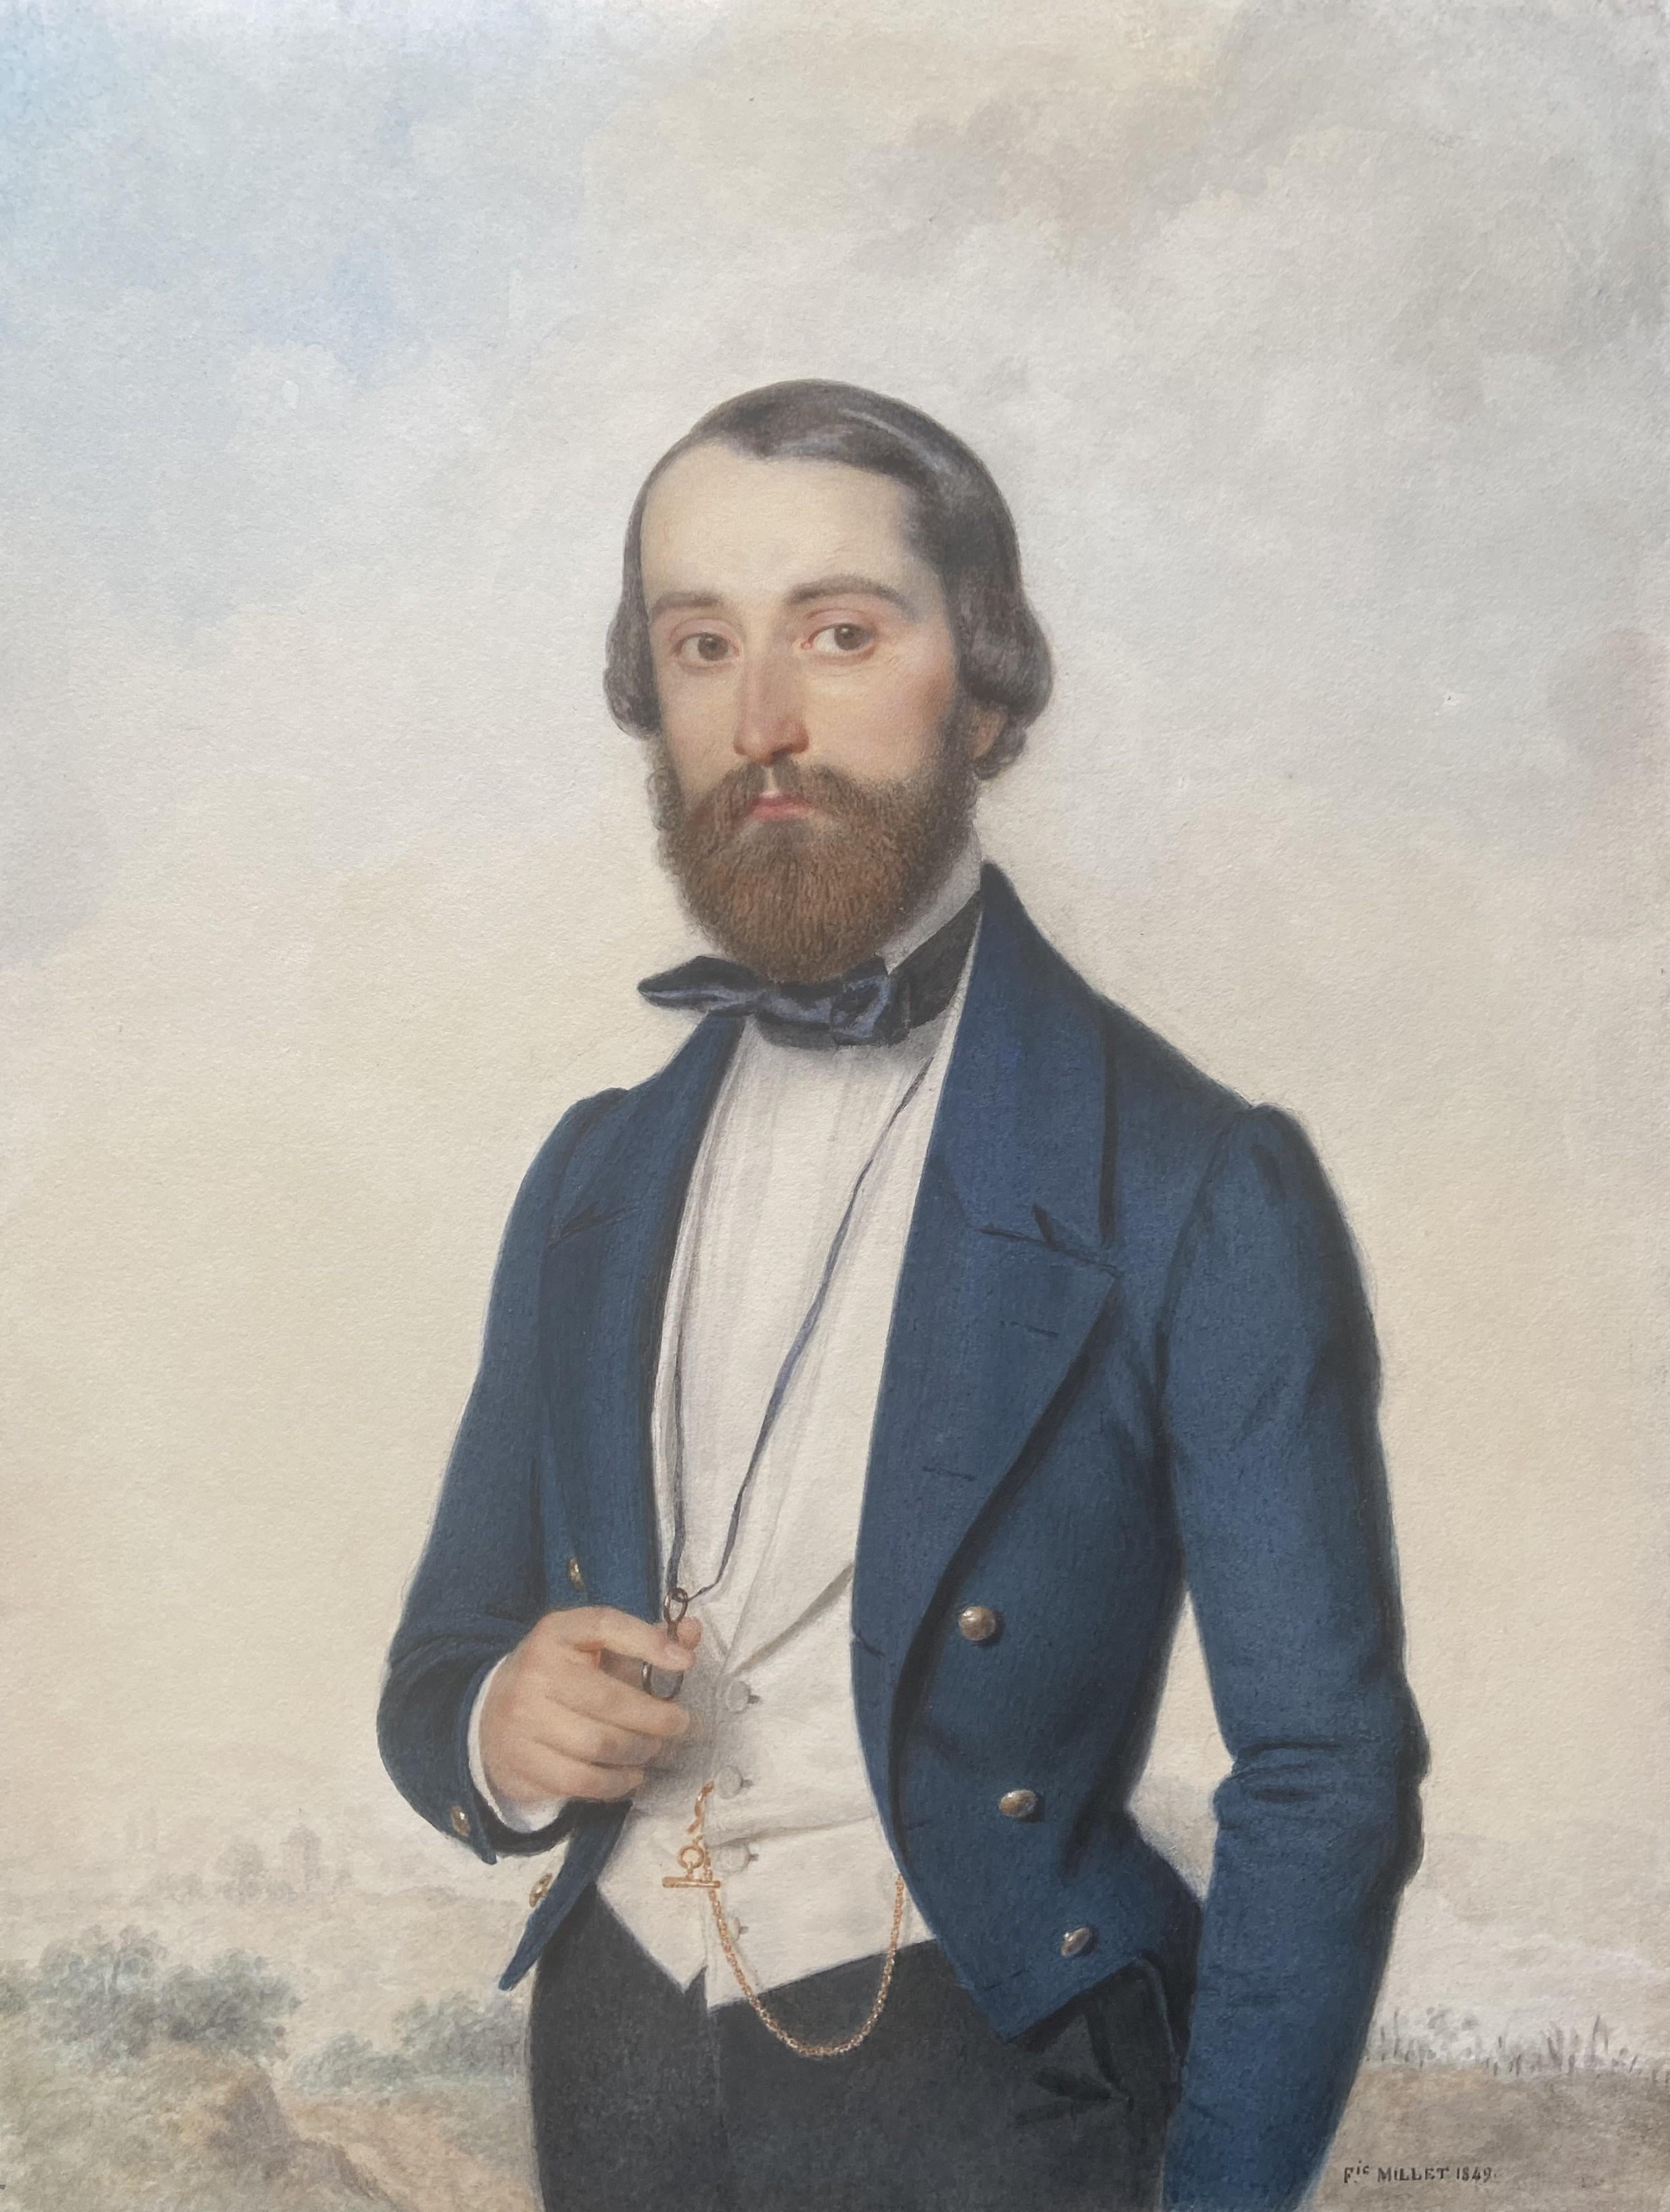 Frédéric Millet (1786-1859) 
Portrait d'un gentleman, 1849 
signé  et daté en bas à droite
Aquarelle sur papier
36 x 27,5 cm
encadré : 44 x 35 cm

Frédéric Millet est réputé à juste titre pour ses portraits, notamment en miniature. Il est donc